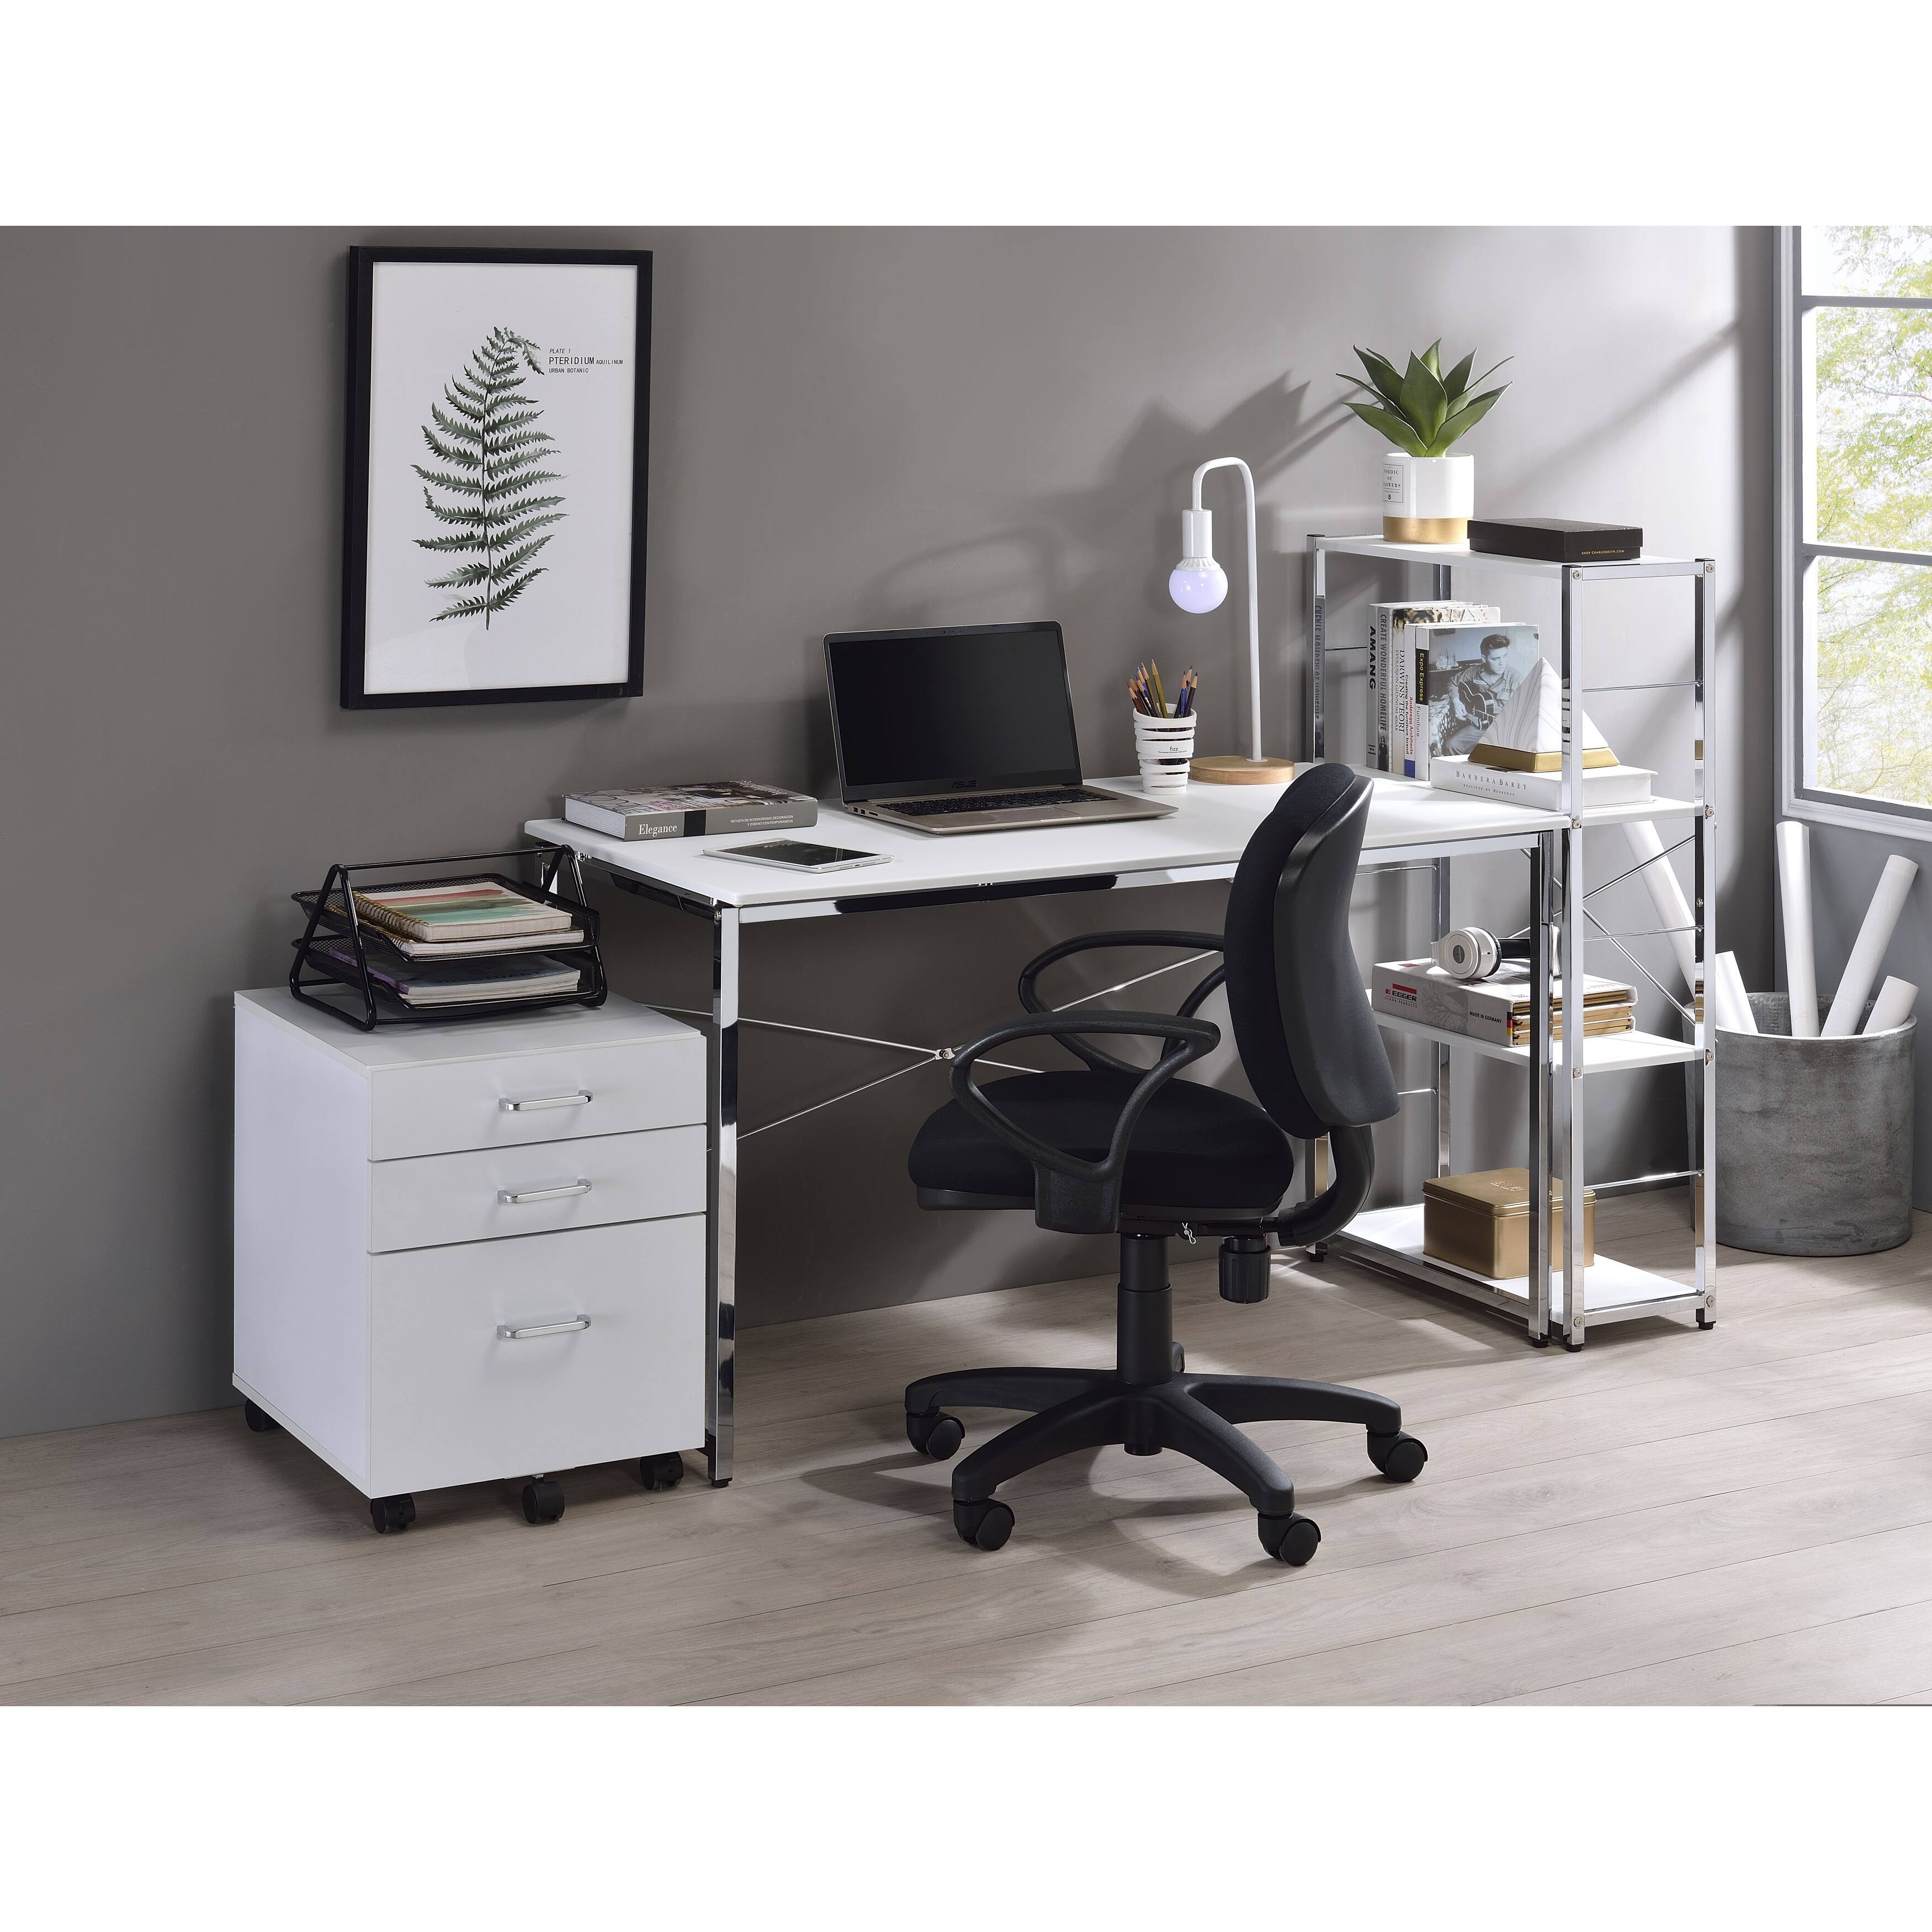 Contemporary Rectangular Writing Desk with 4 Tier Shelf Bookcase - Chrome Metal Frame